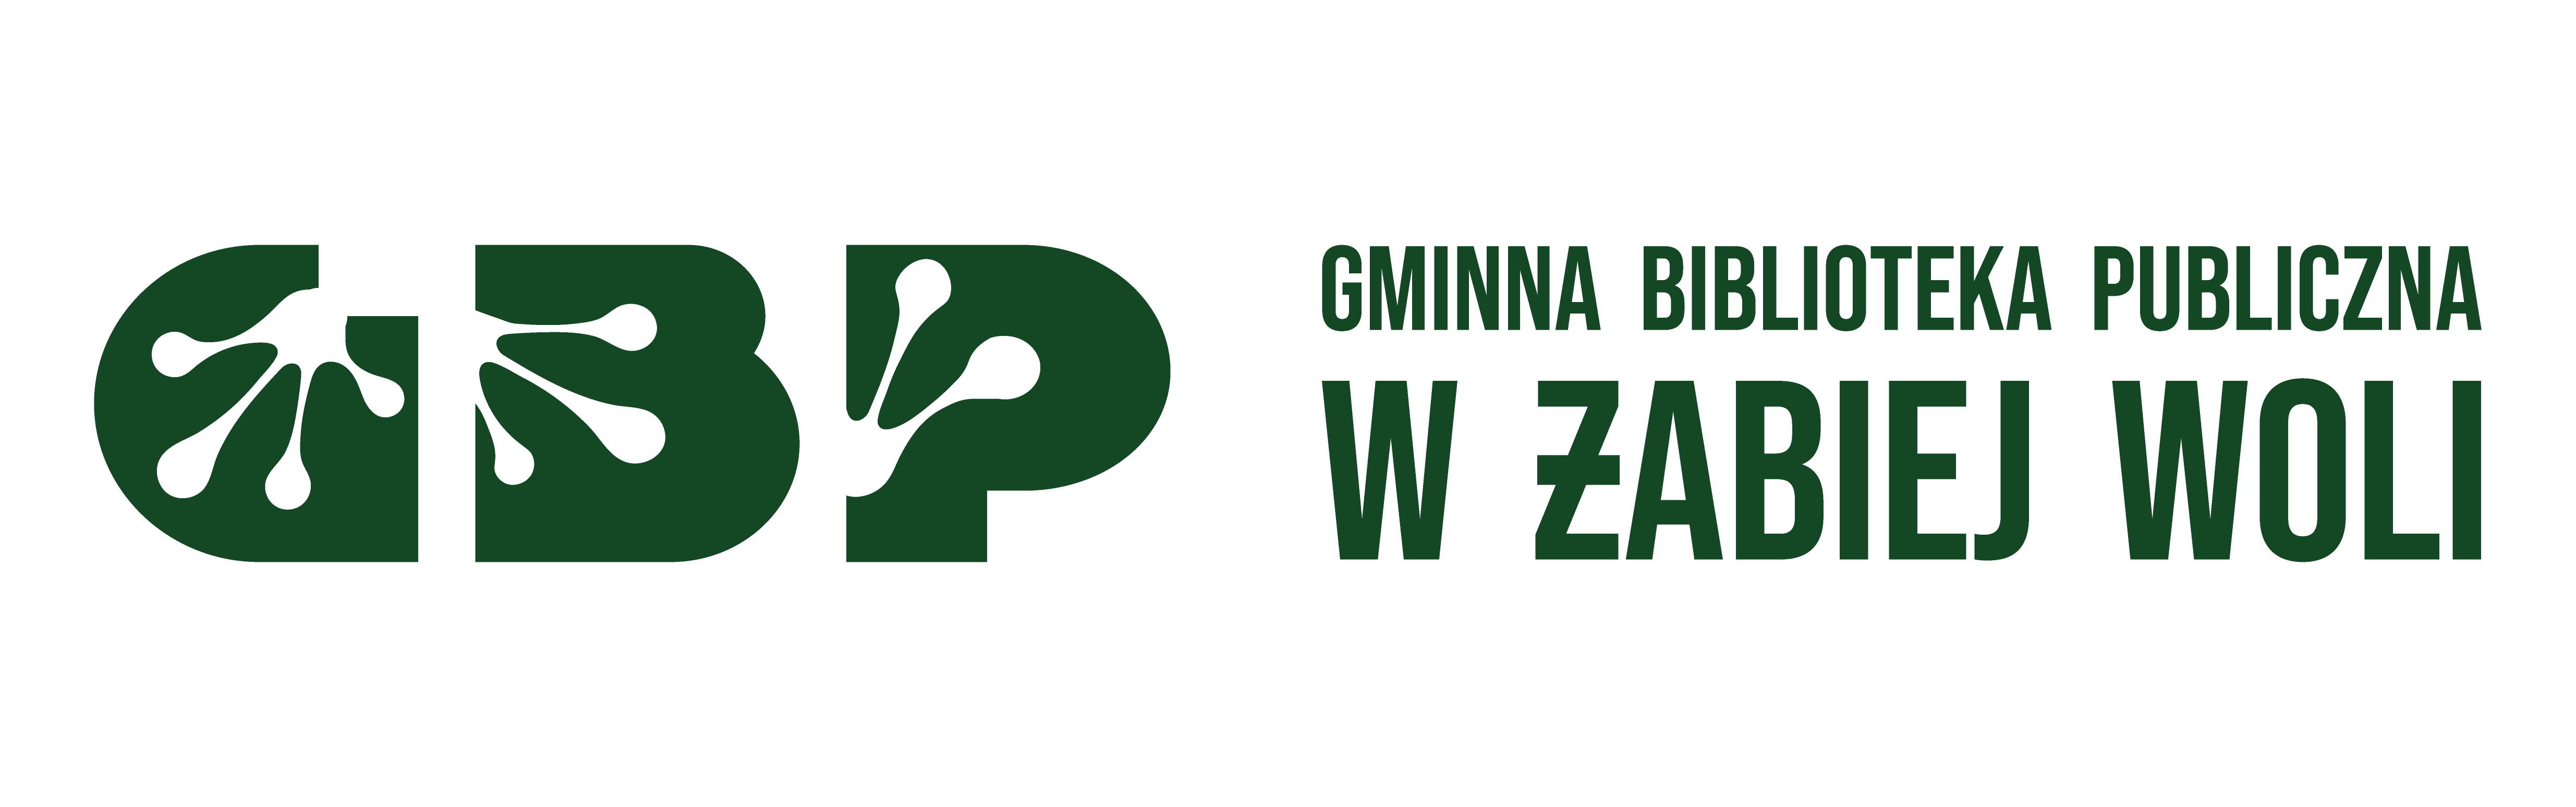 logo - Gminna Biblioteka Publiczna w Żabiej Woli